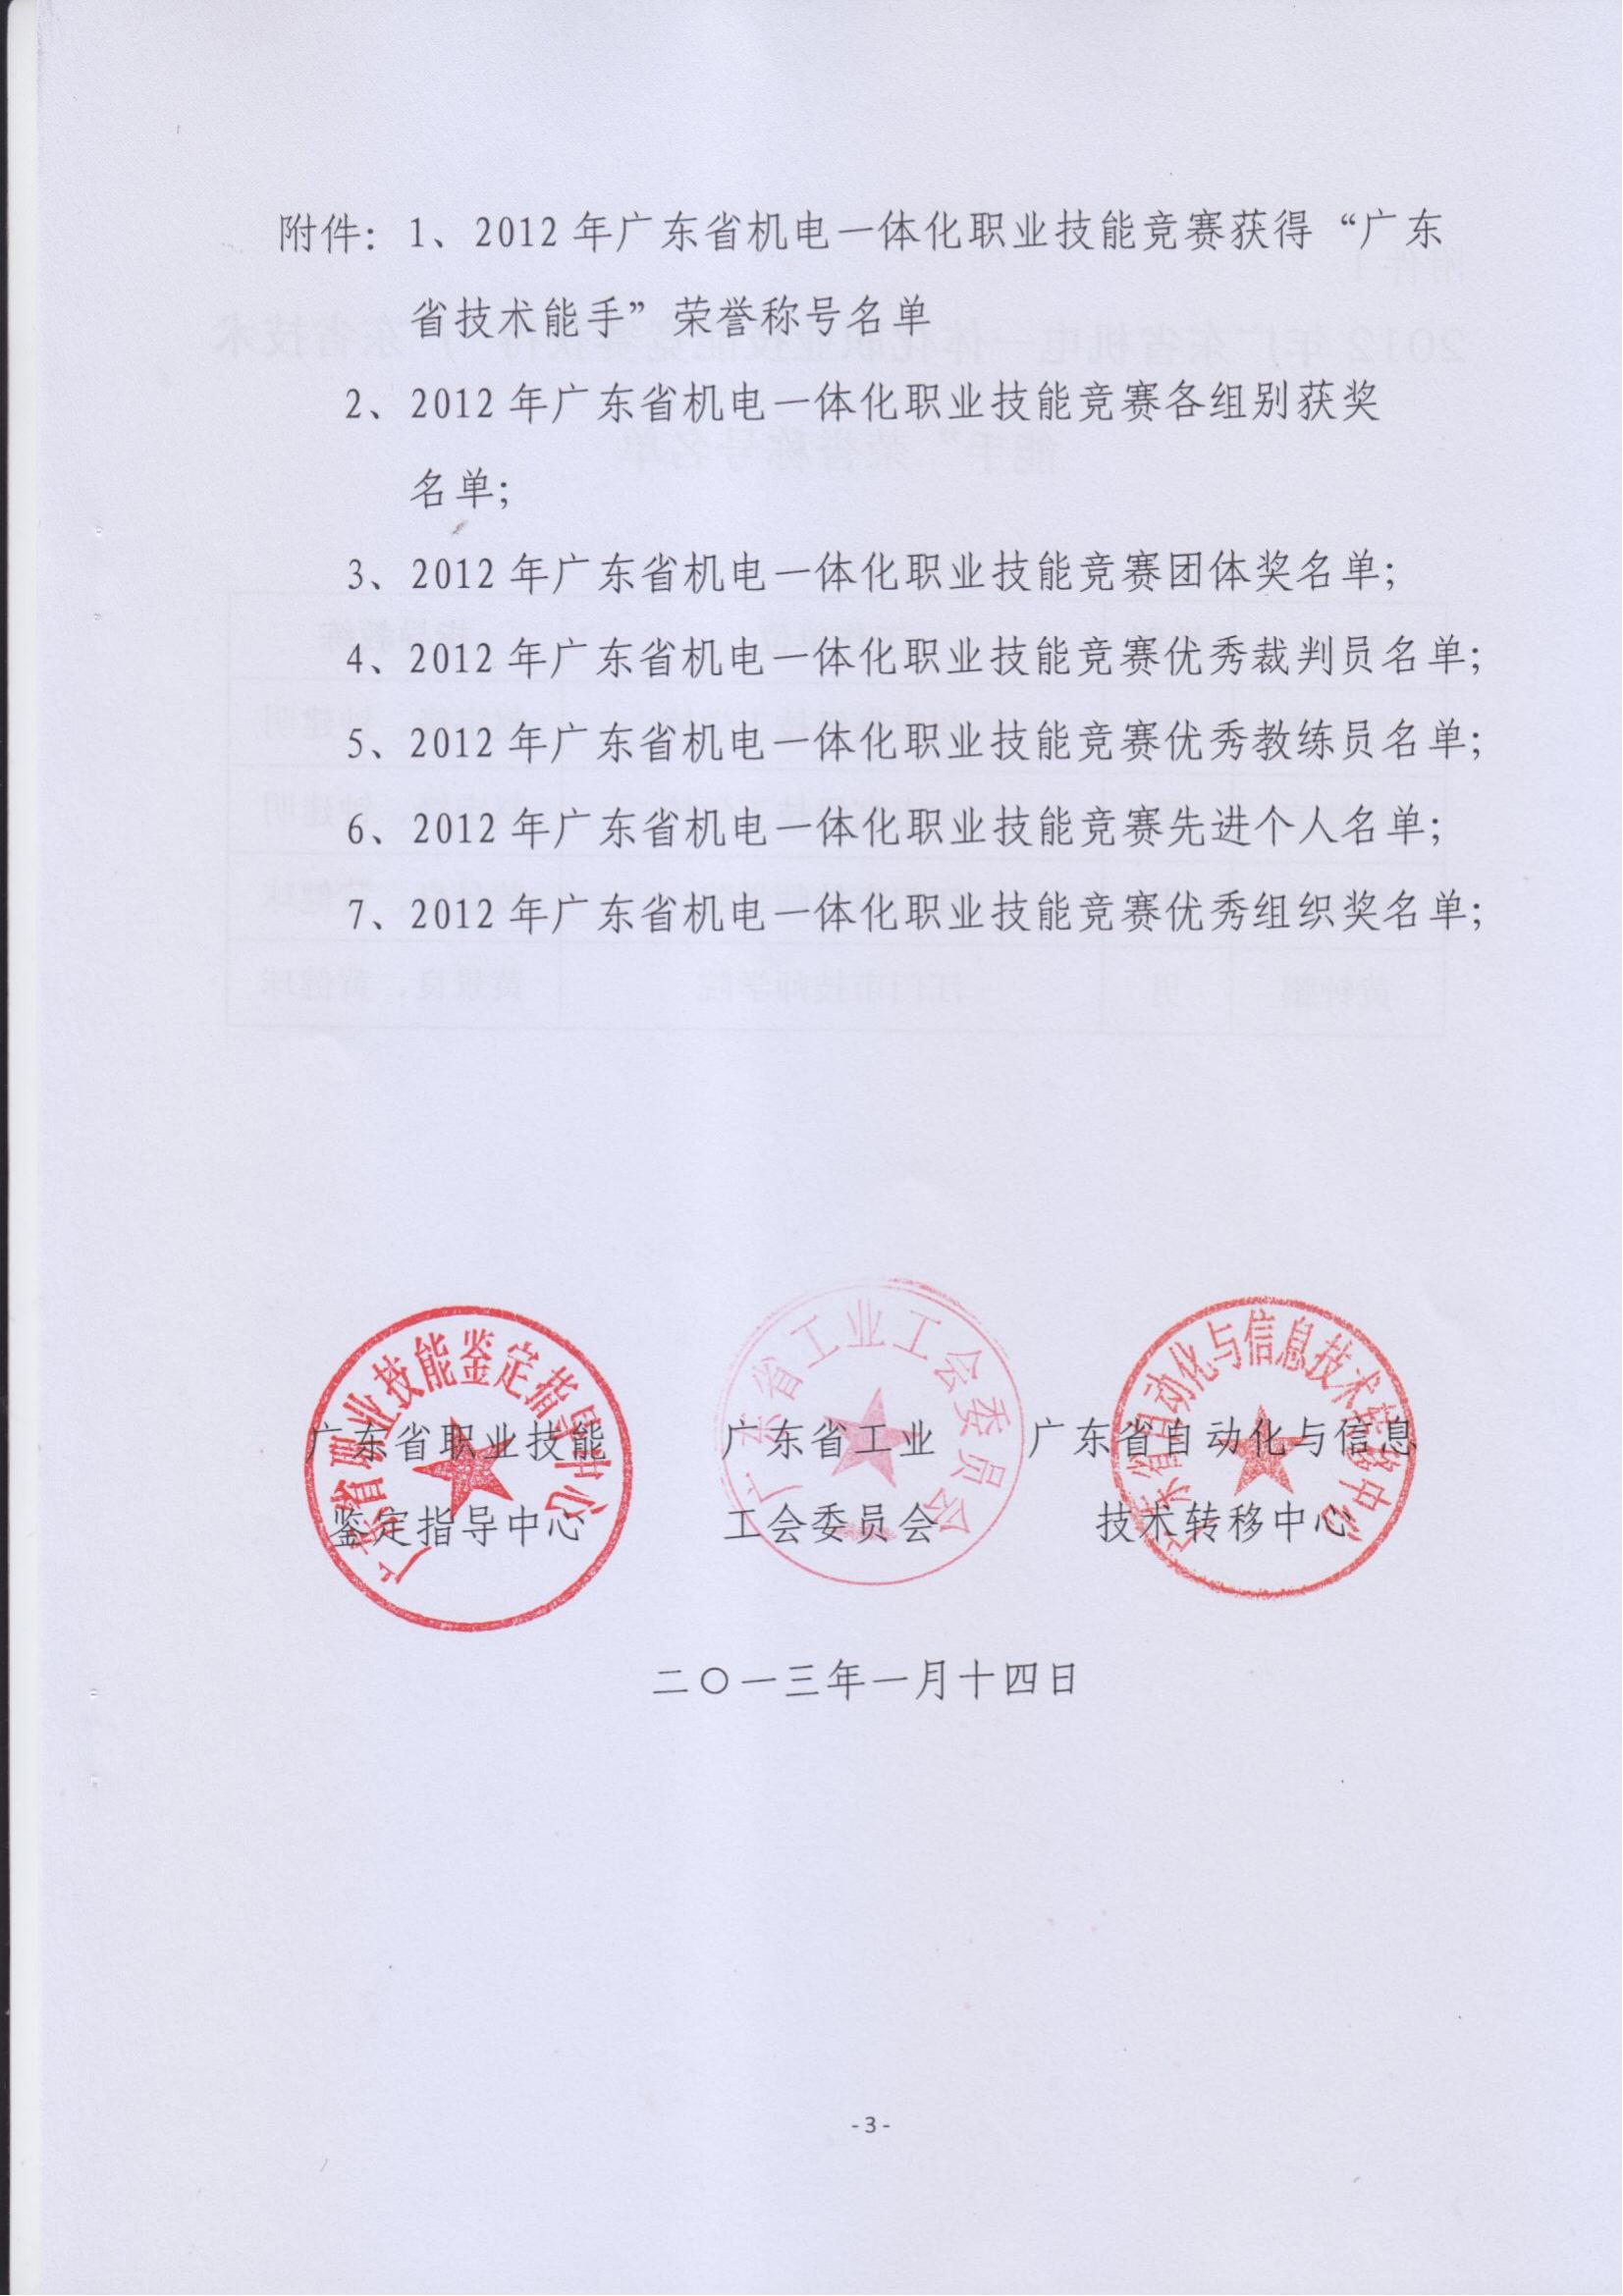 关于表彰2012年广东省机电一体化职业技能竞赛获奖人员和单位的通报_02.jpg